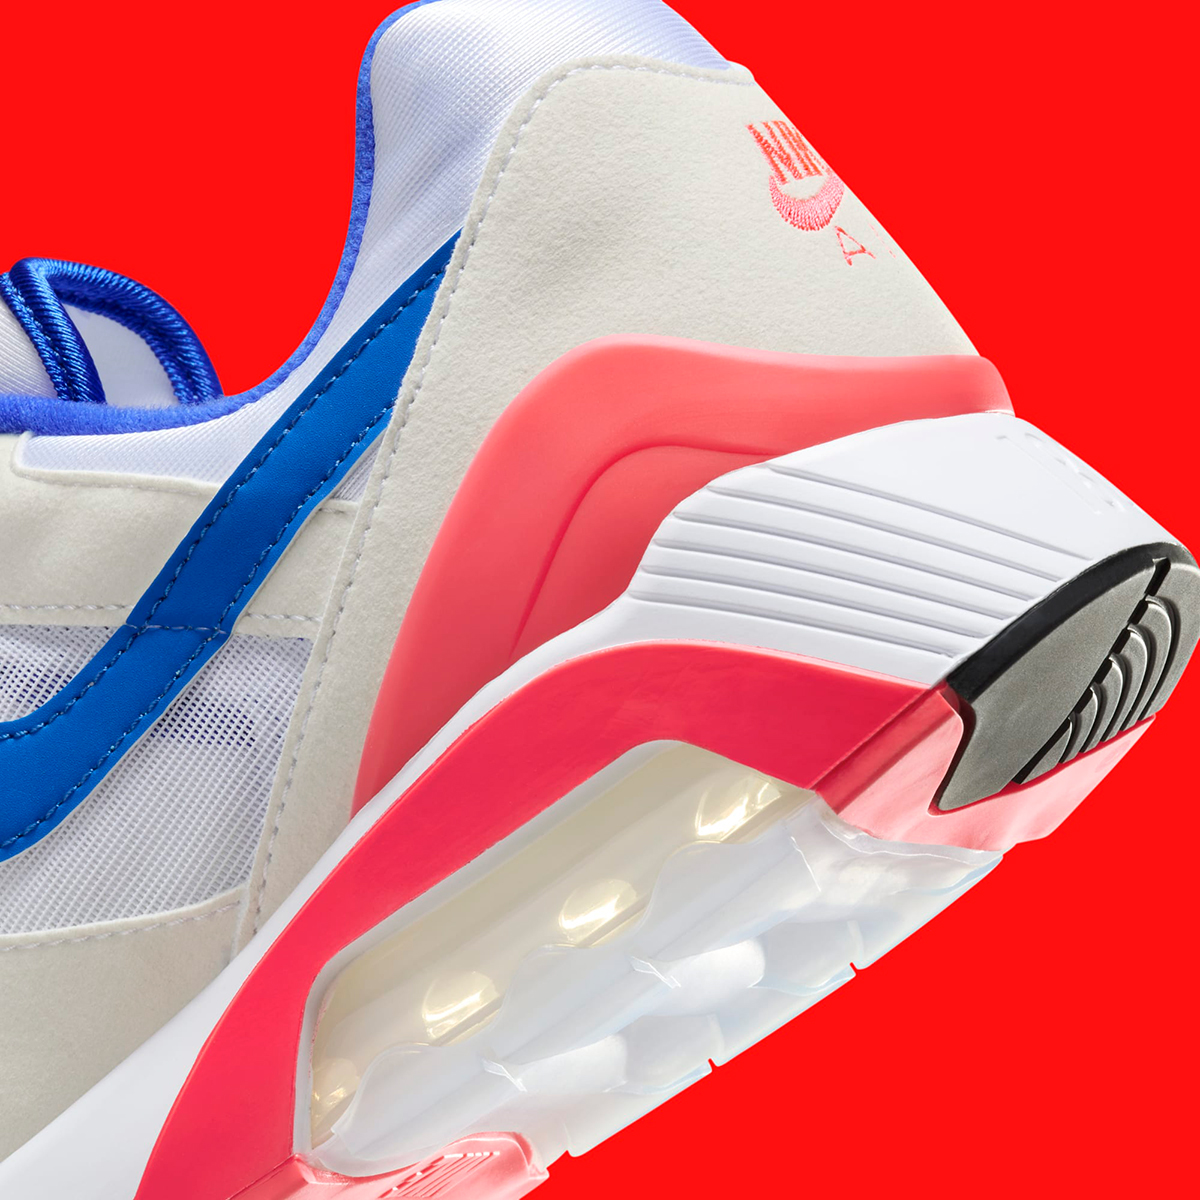 Nike Air 180 Ultramarine Bright Concord Fj9259 100 Release Date 1